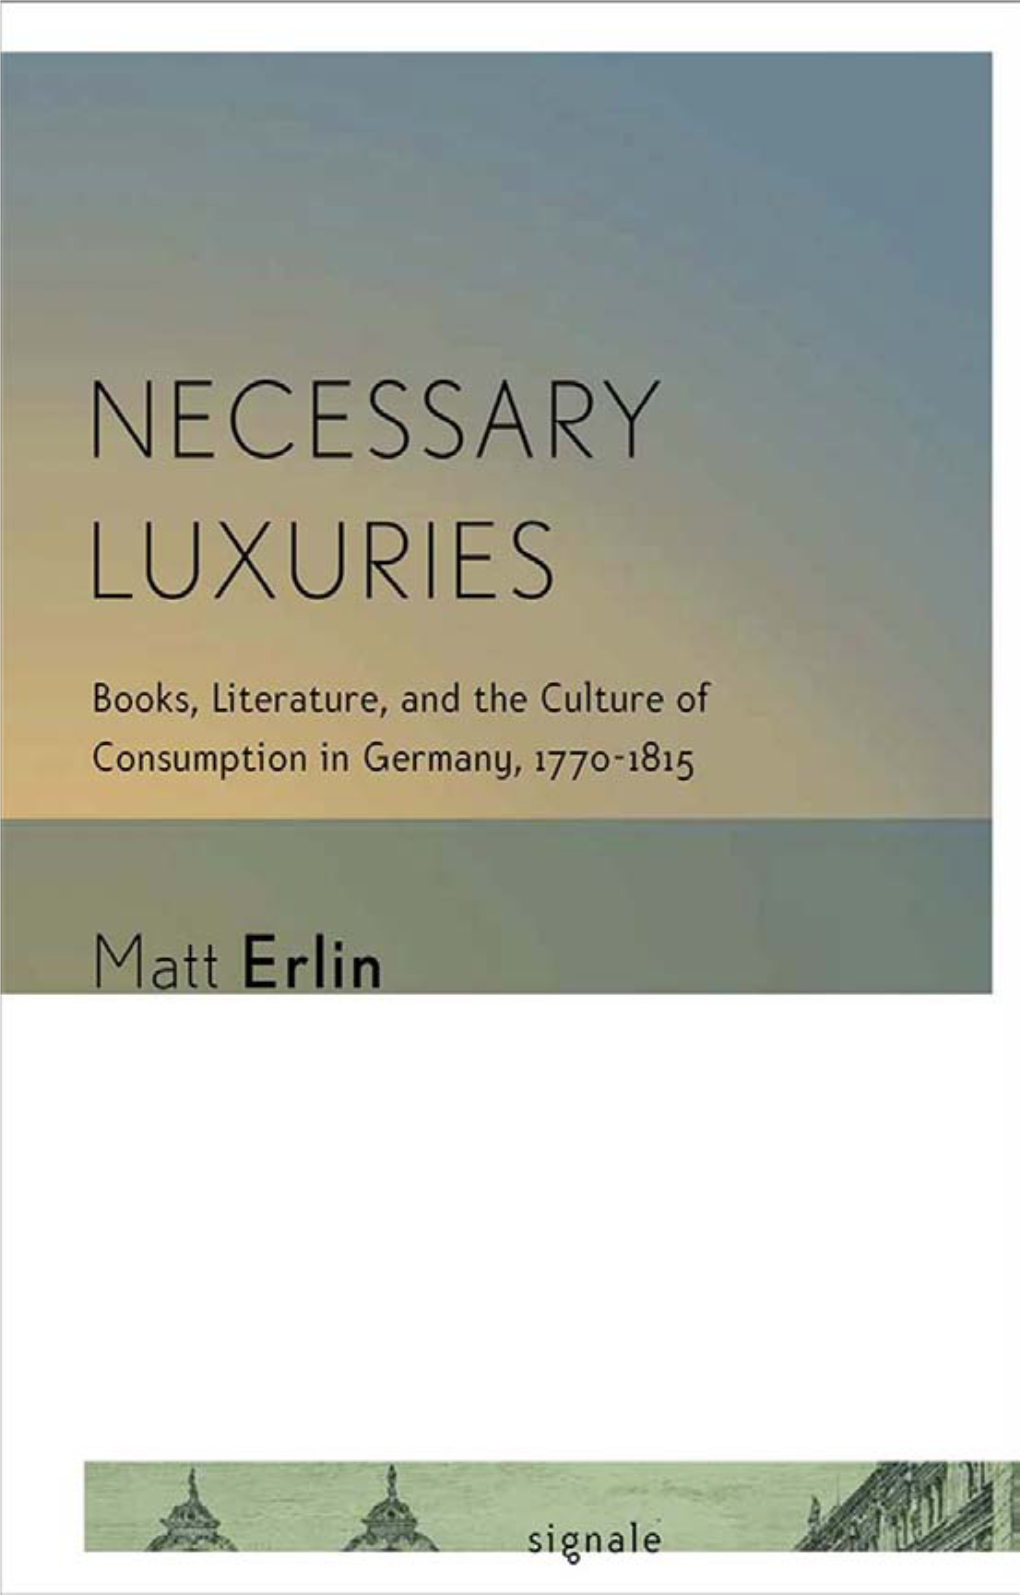 Necessary Luxuries Series Editor: Peter Uwe Hohendahl, Cornell University